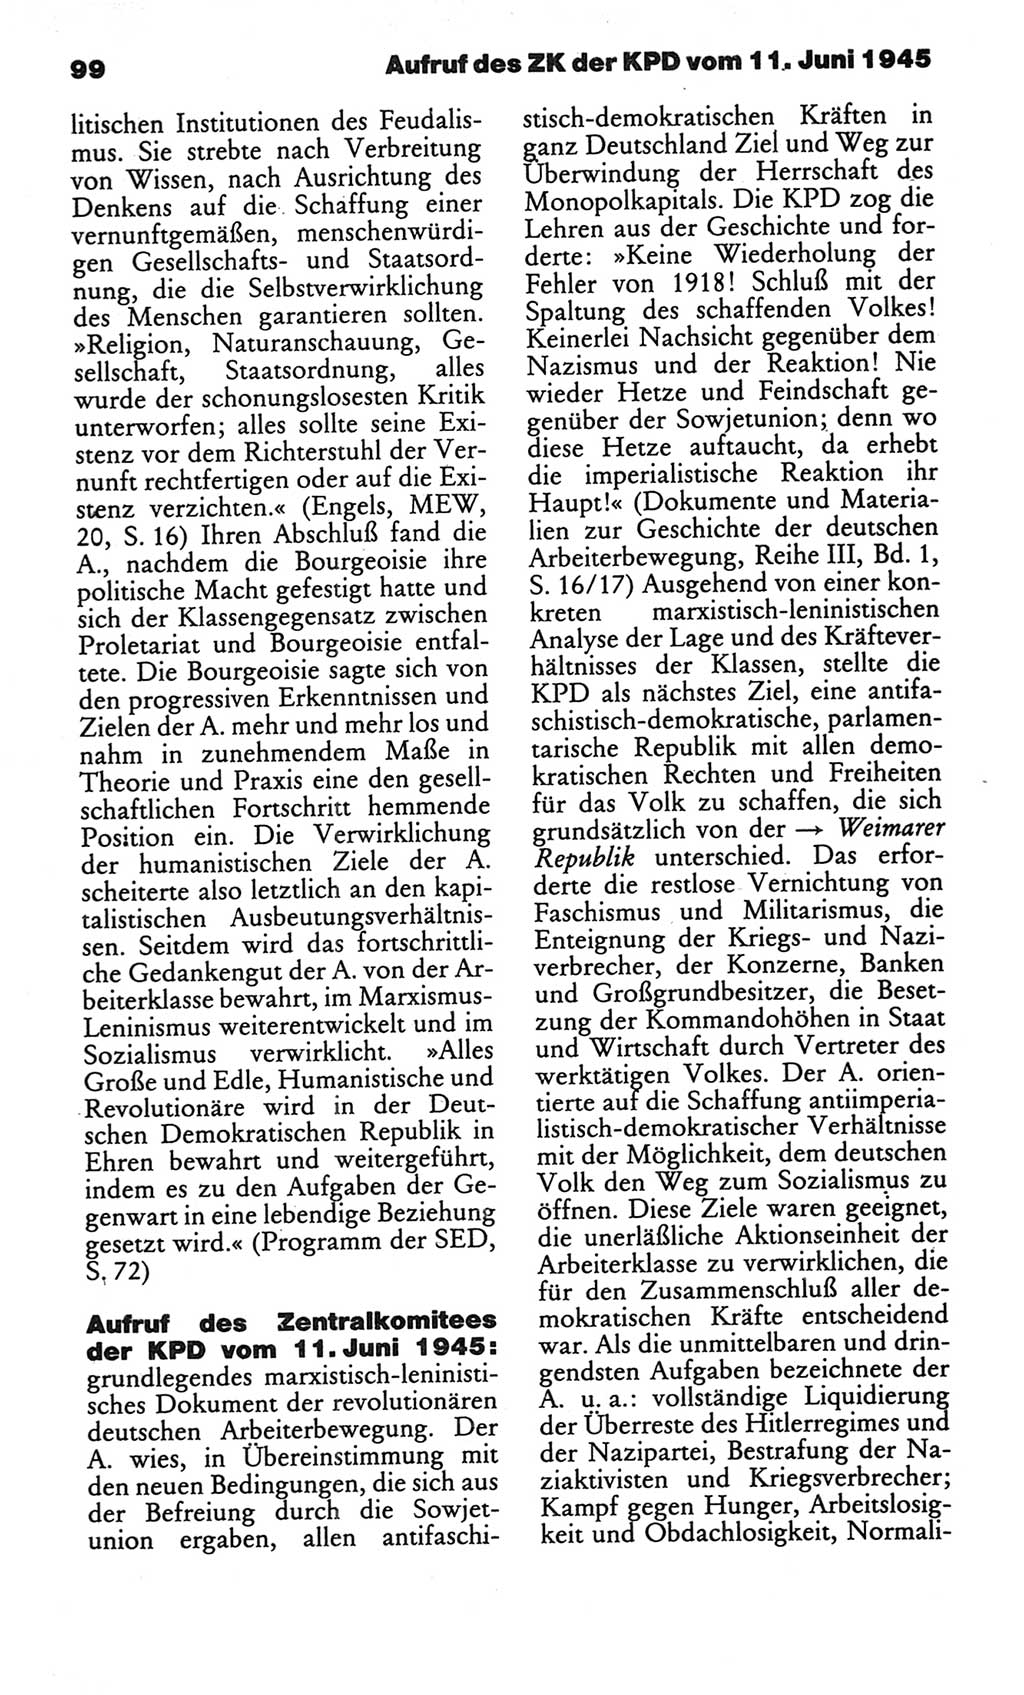 Kleines politisches Wörterbuch [Deutsche Demokratische Republik (DDR)] 1986, Seite 99 (Kl. pol. Wb. DDR 1986, S. 99)